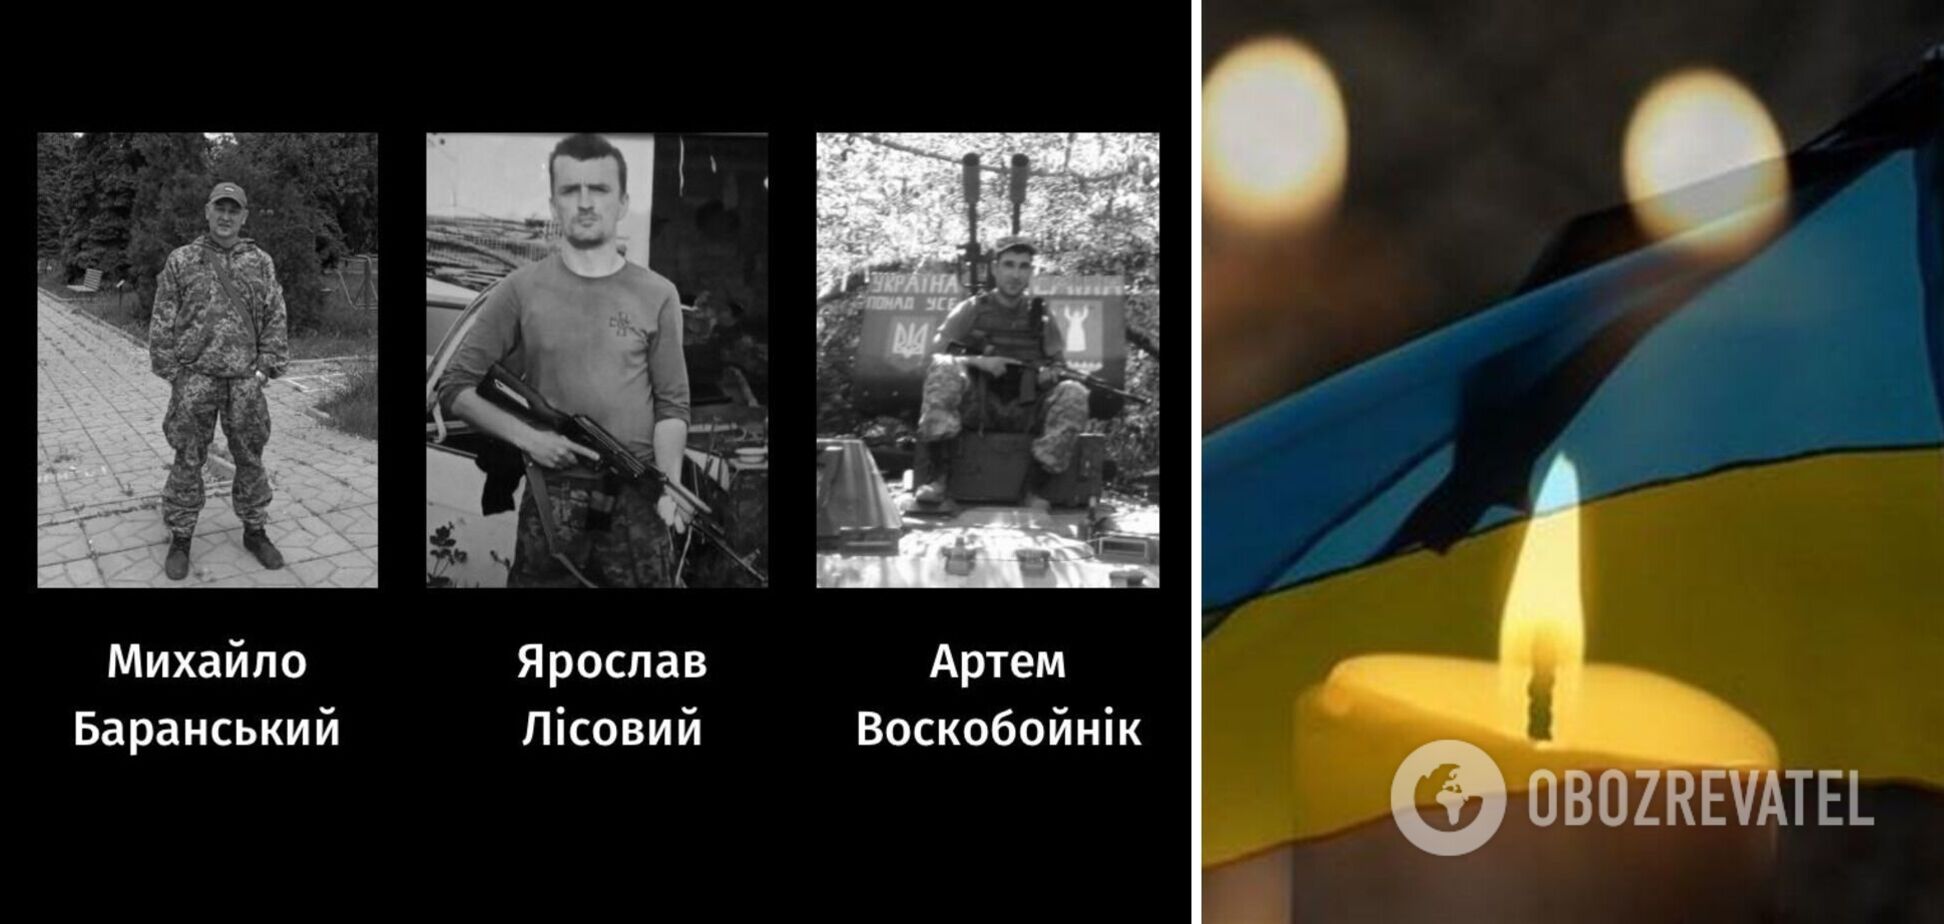 Віддали життя за Україну: у Черкасах поховали трьох військових, які загинули на Запоріжжі. Фото